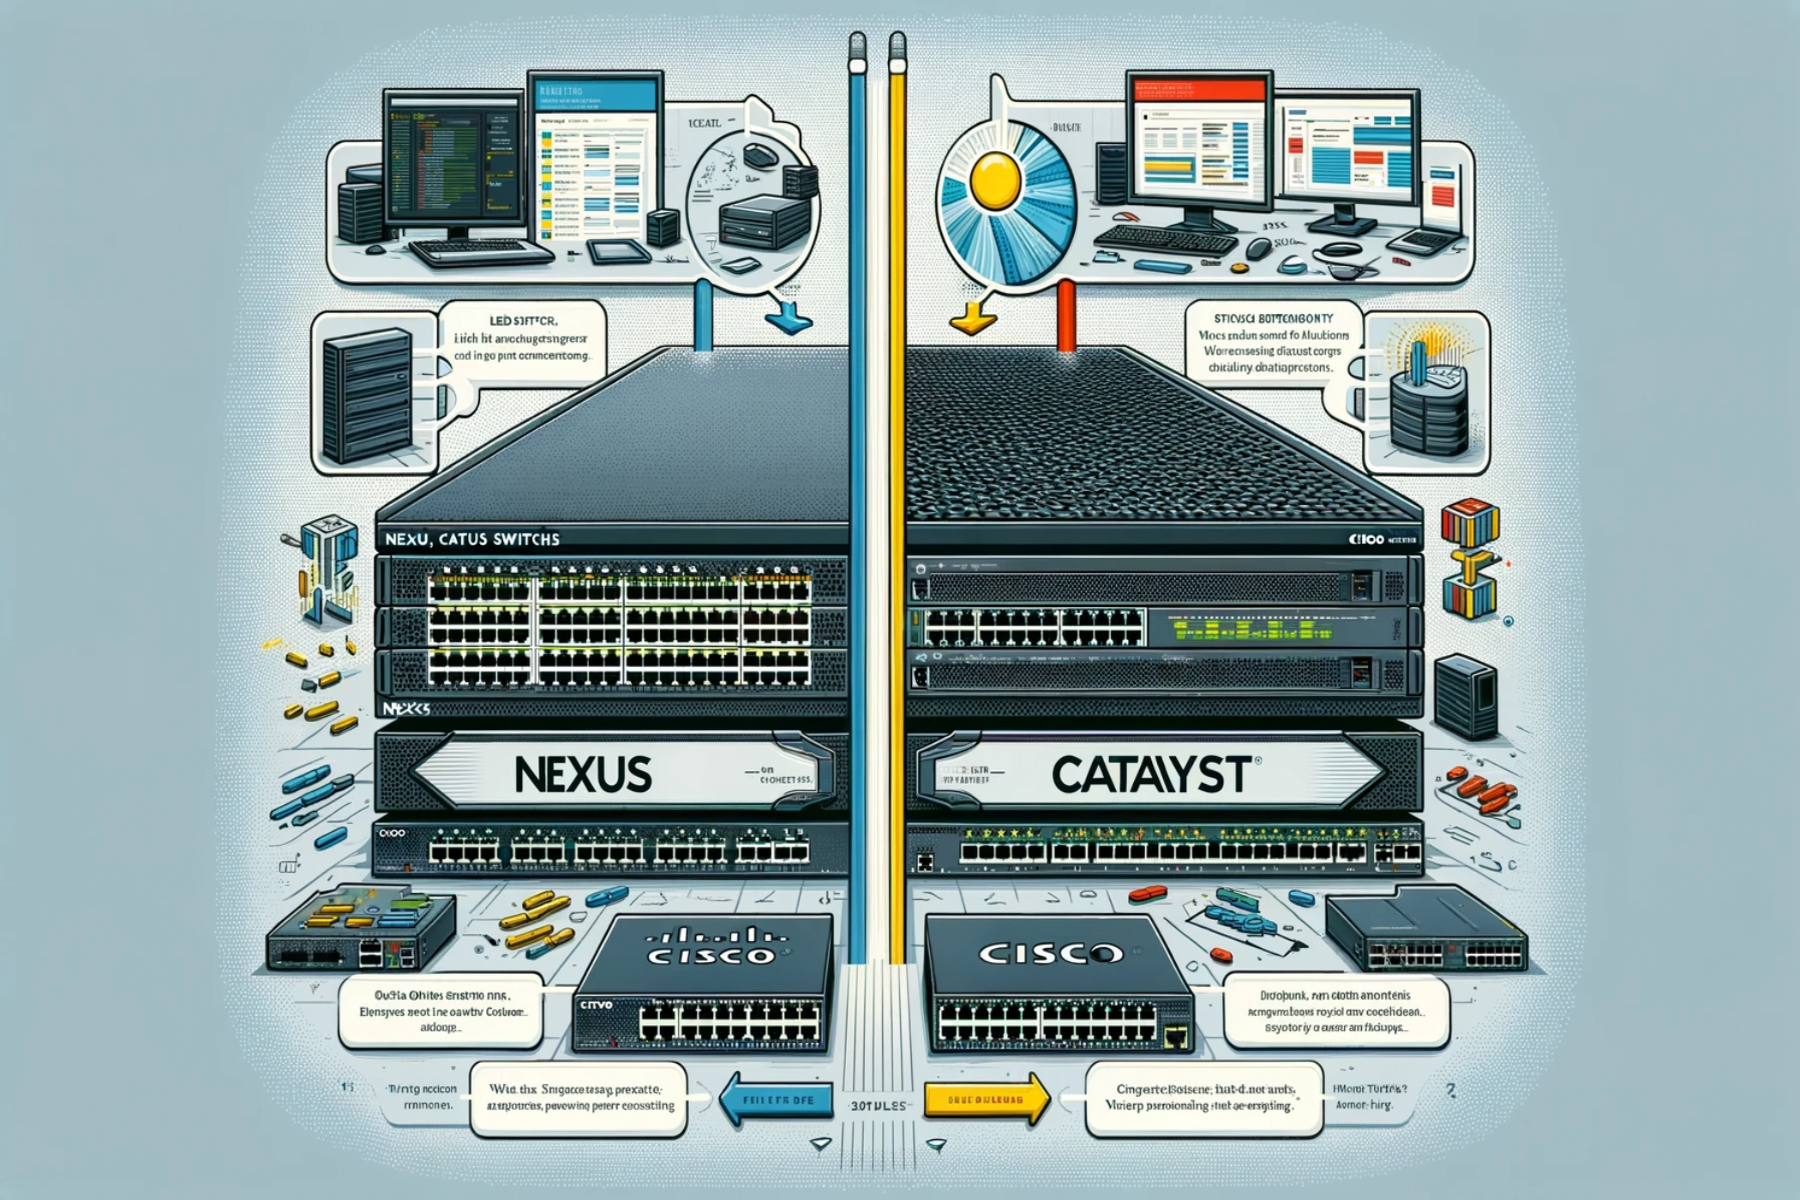 Cisco Nexus and Catalyst switches